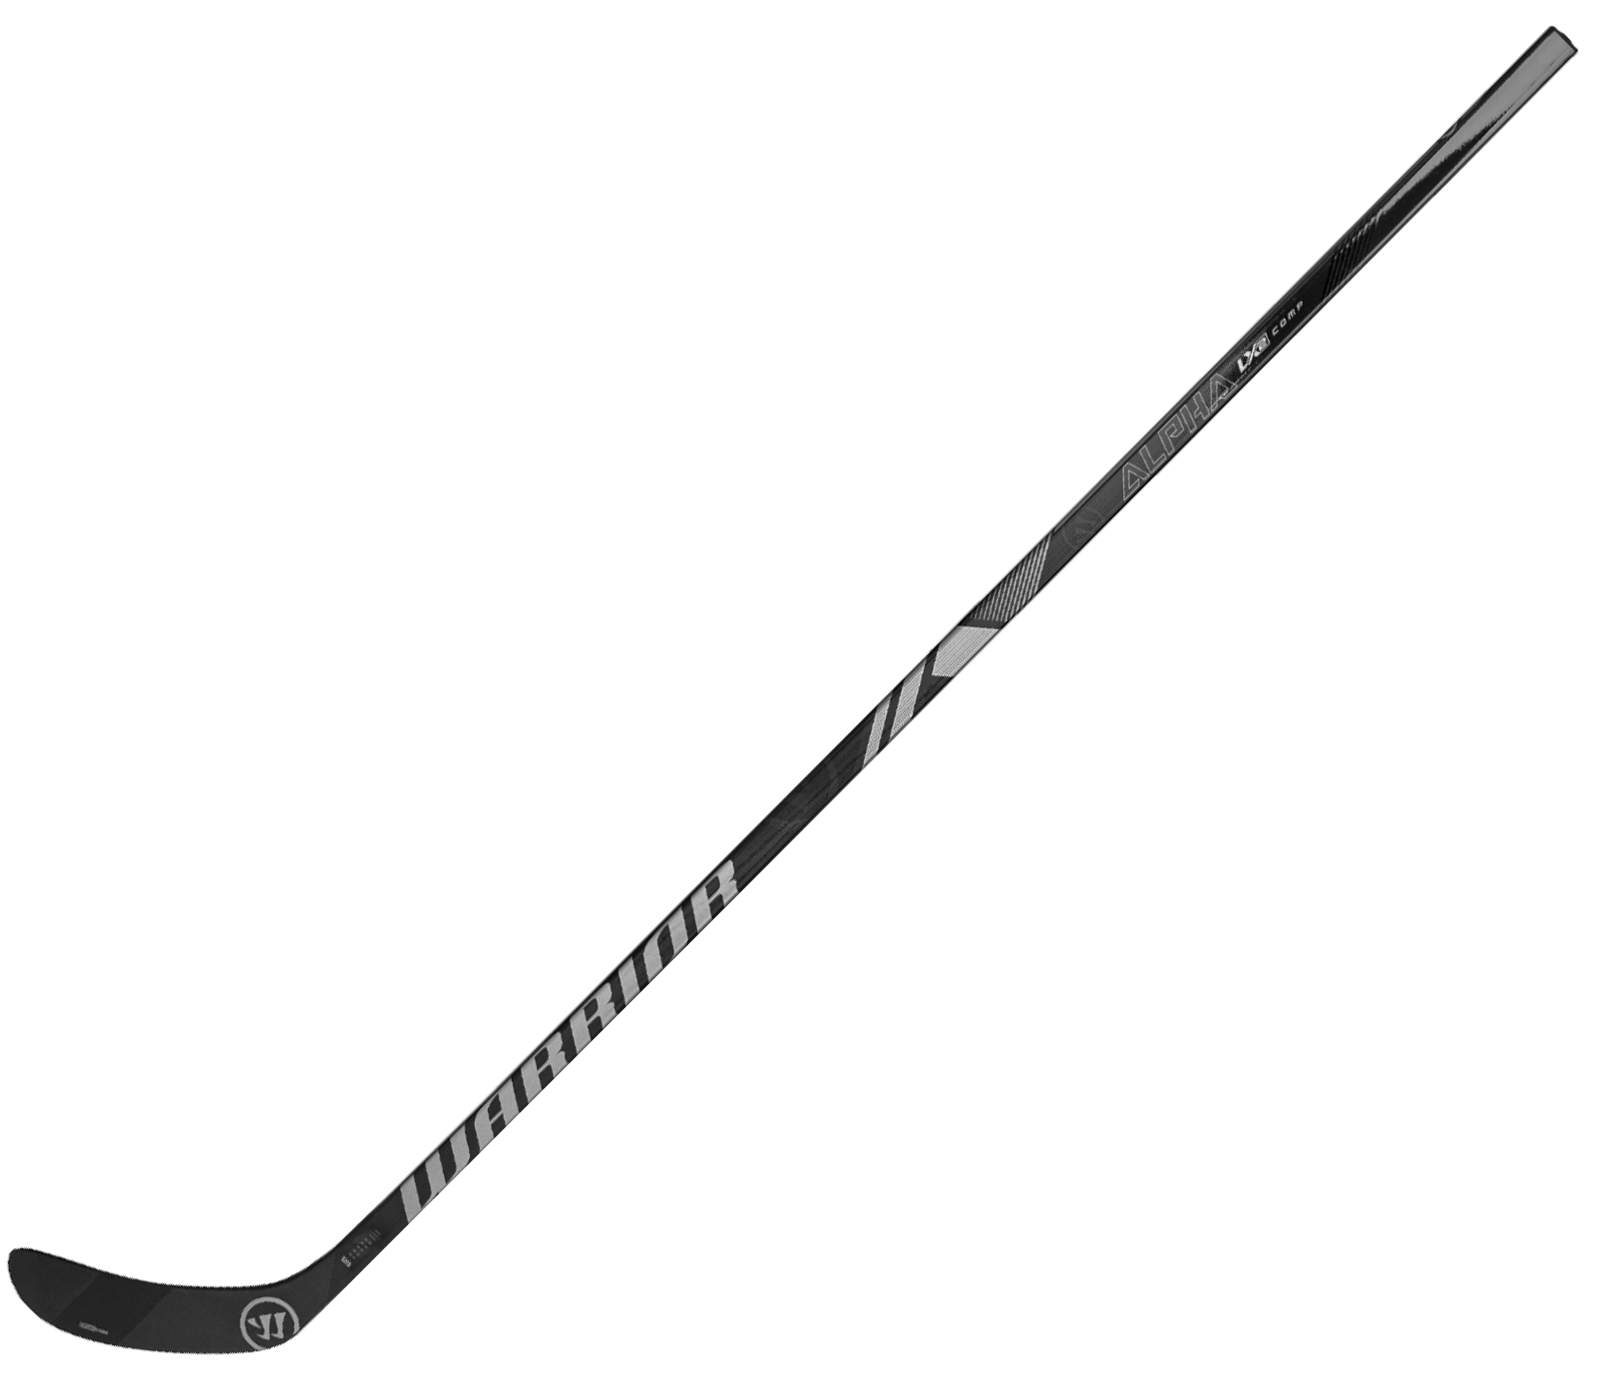 Warrior Alpha LX2 Comp Bâton de Hockey Intermédiaire